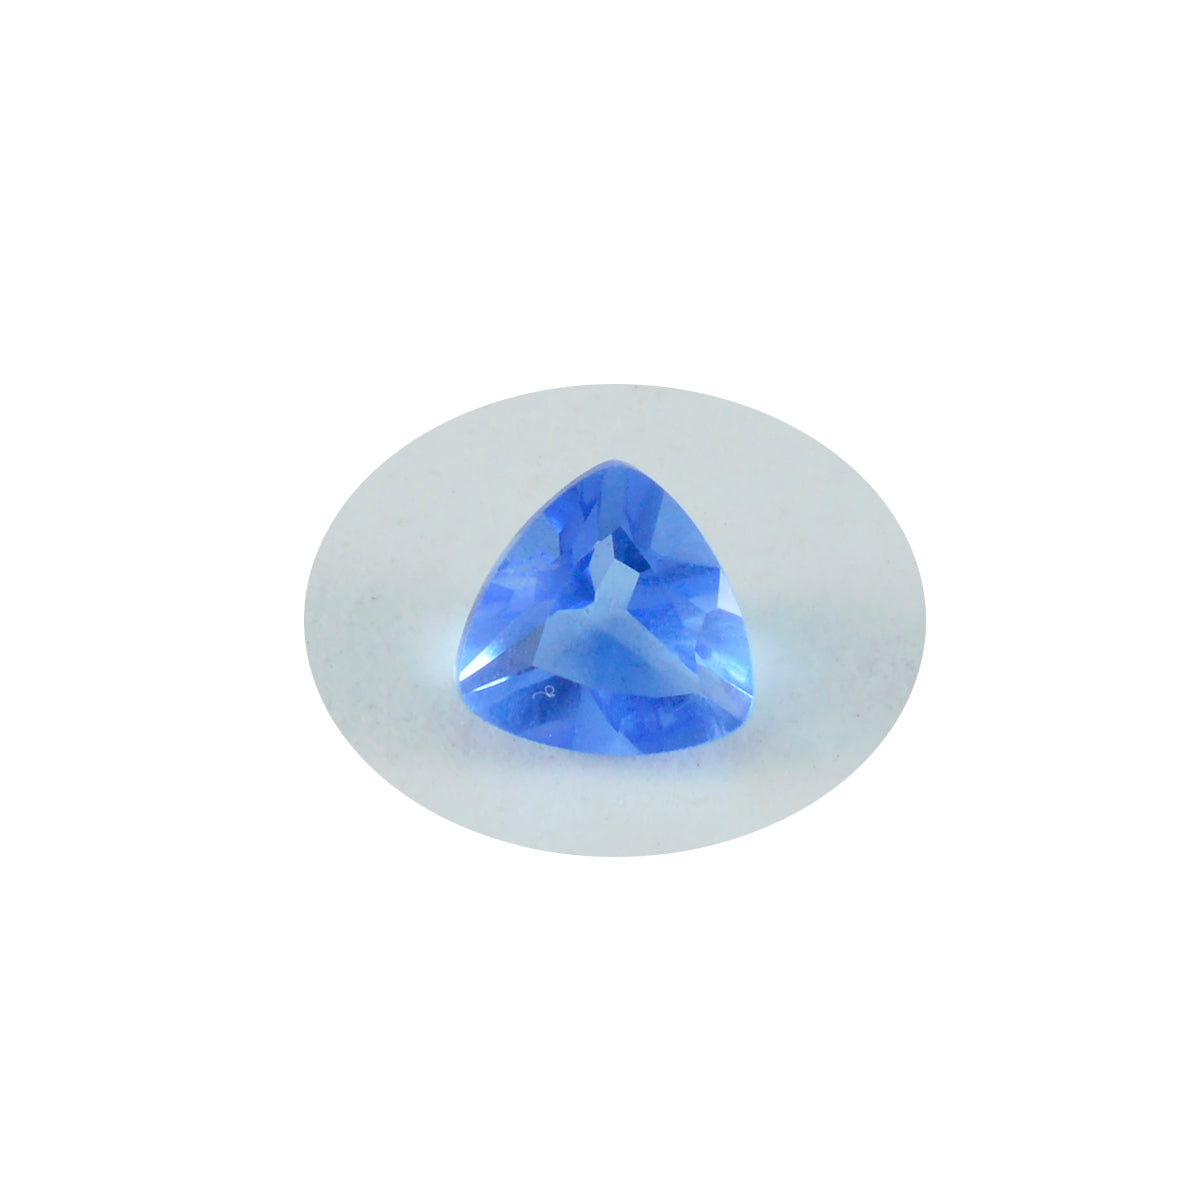 Riyogems 1 Stück blauer Saphir, CZ, facettiert, 12 x 12 mm, Trillionenform, Schönheits-Qualitätsedelstein